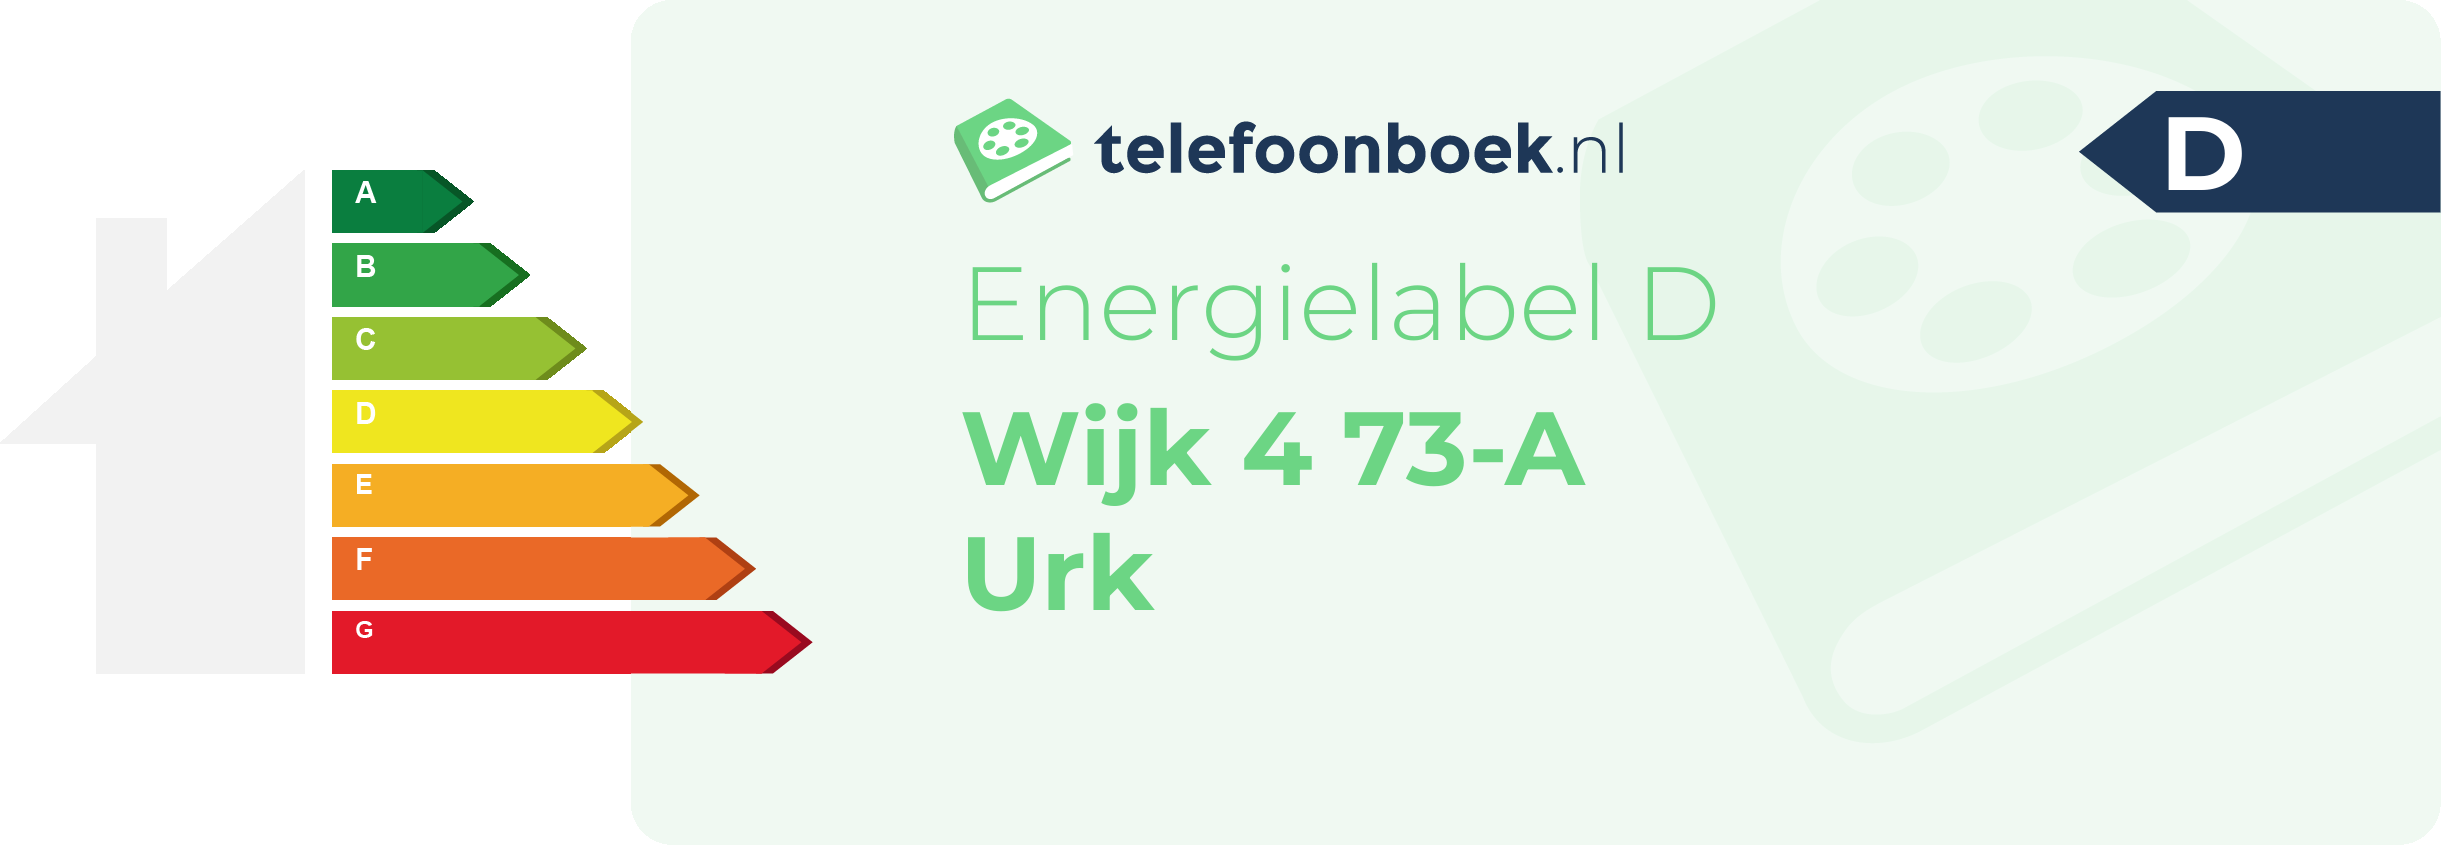 Energielabel Wijk 4 73-A Urk